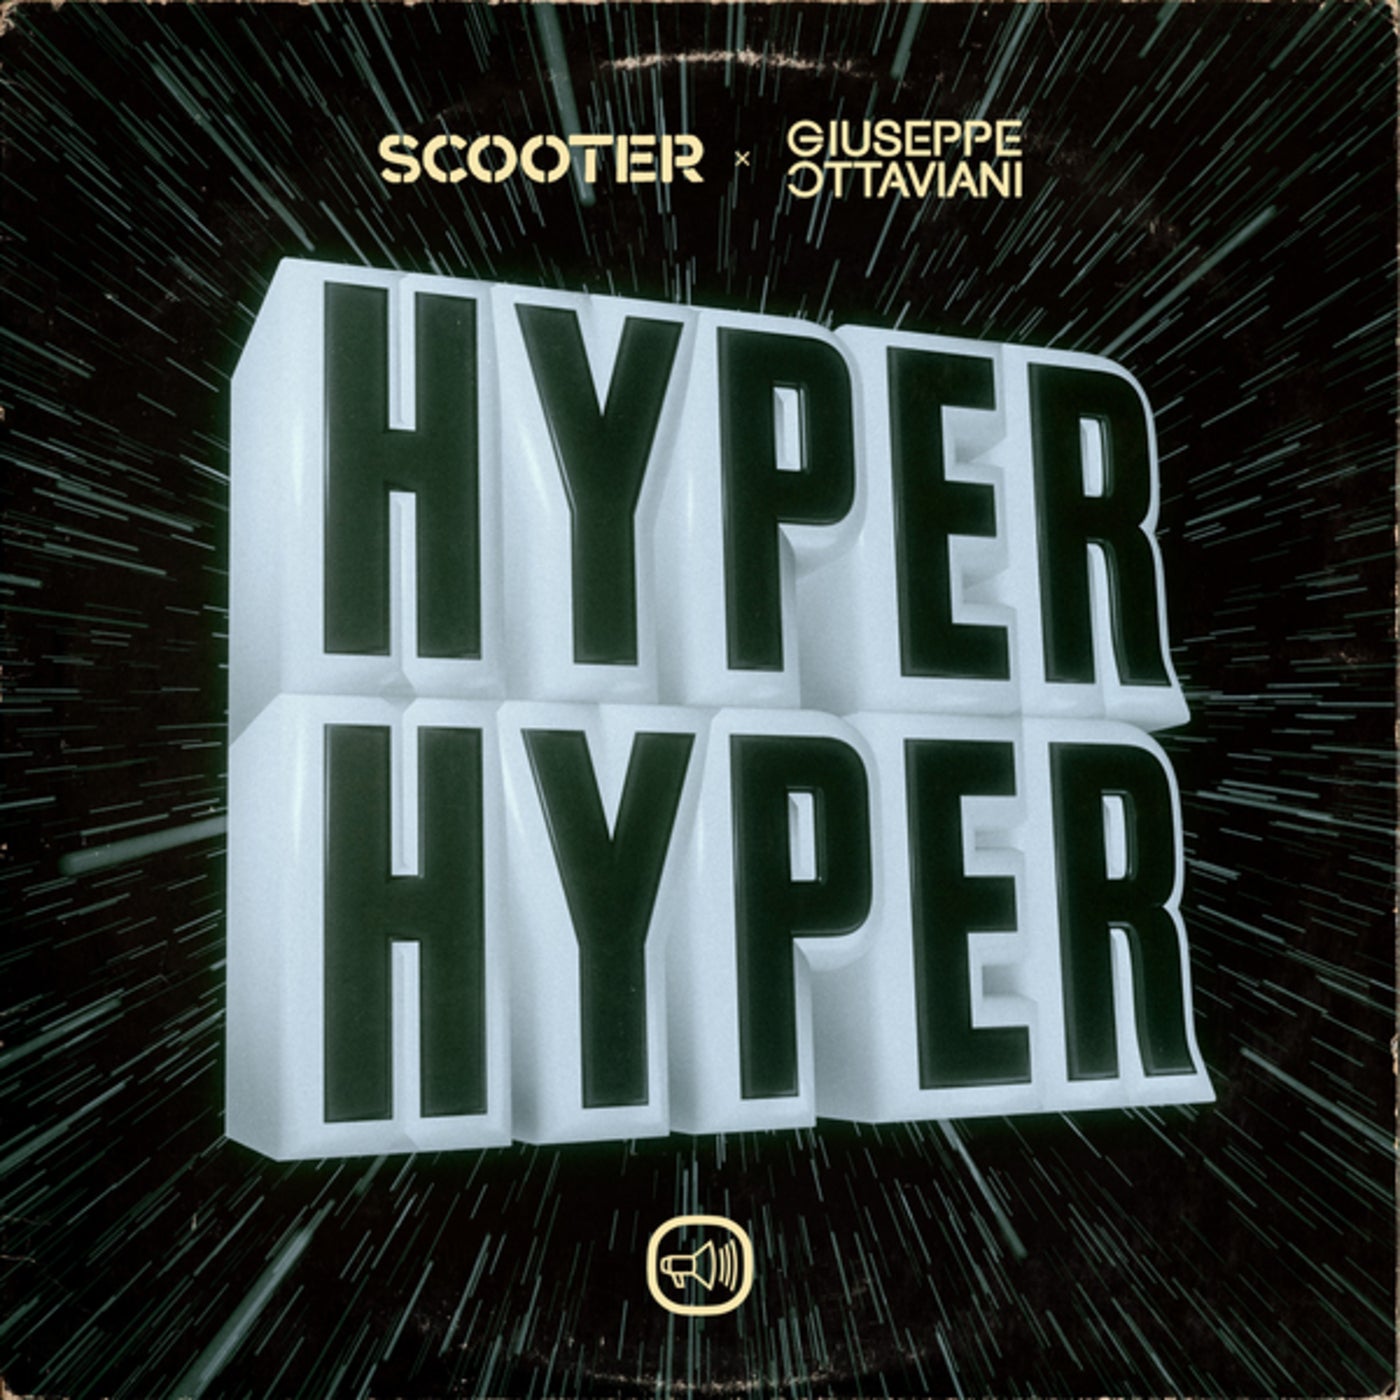 Scooter & Giuseppe Ottaviani — Hyper Hyper cover artwork